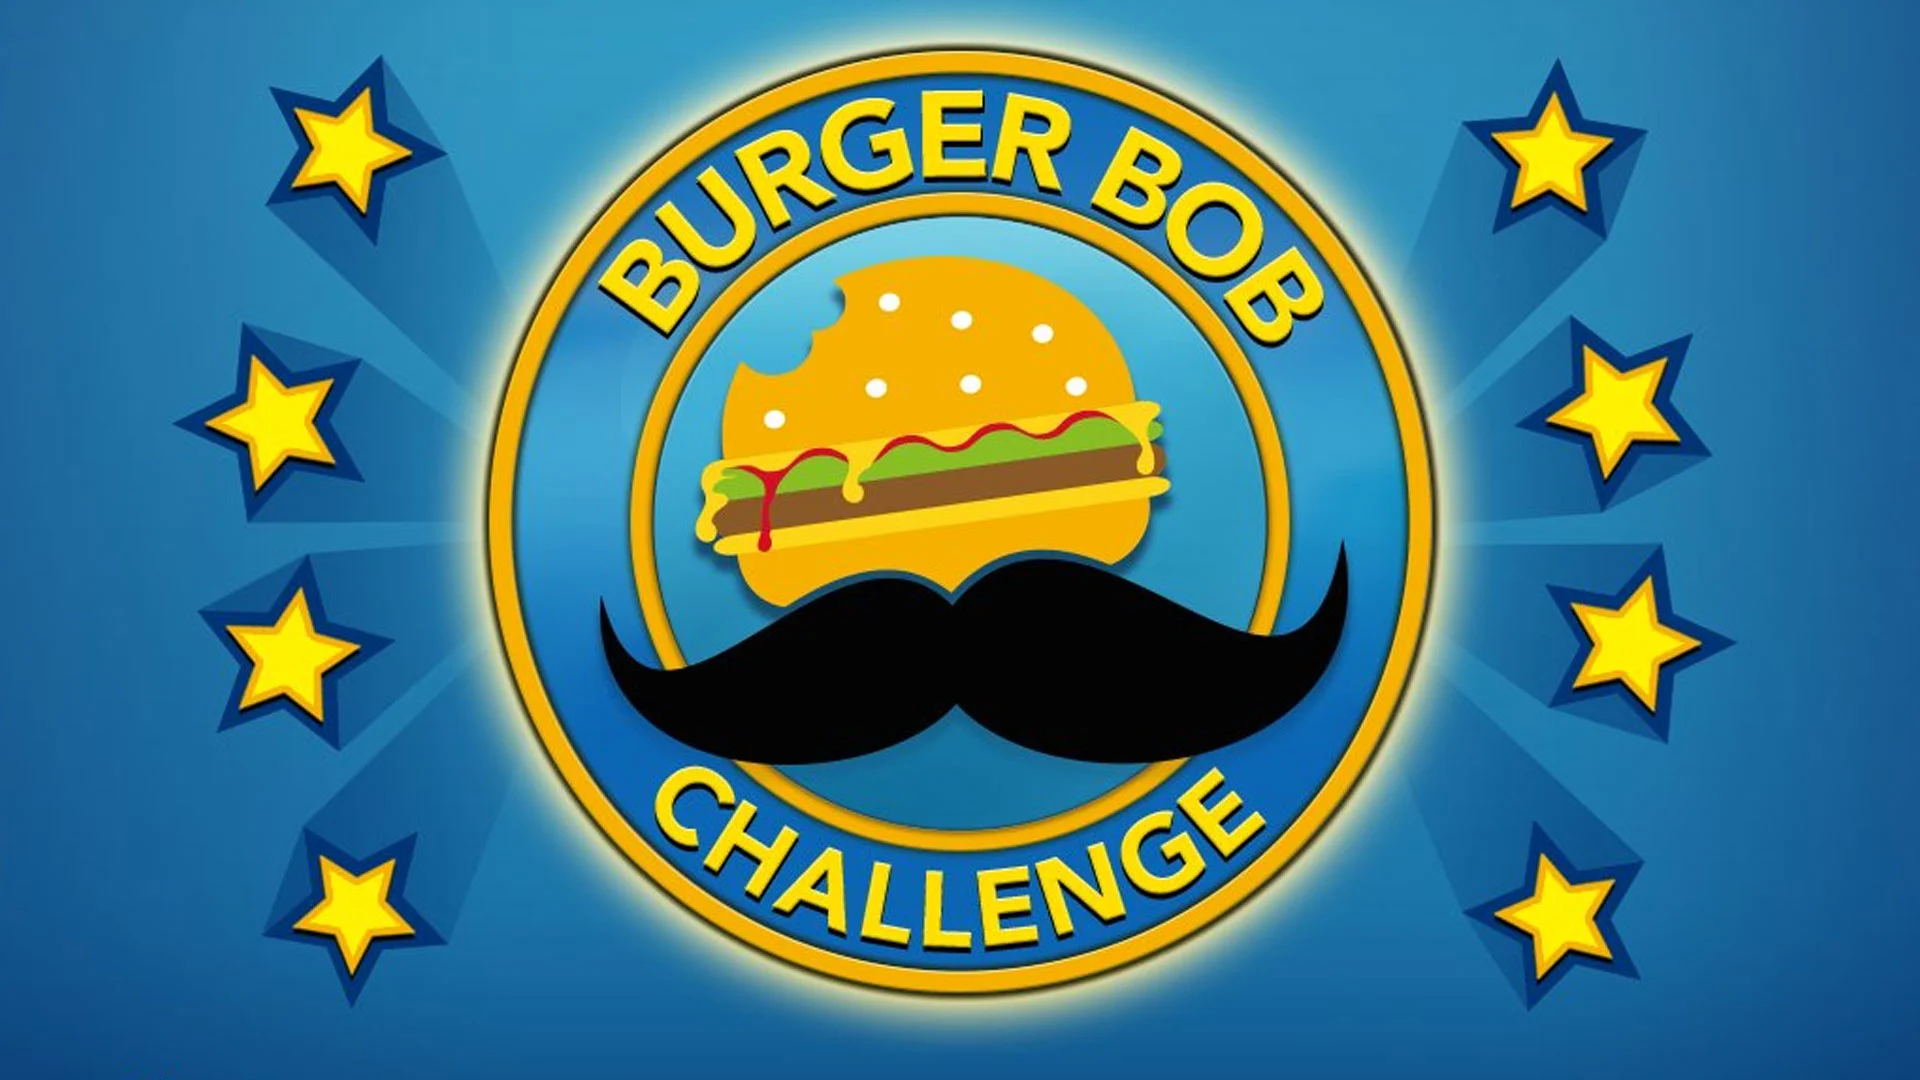 BitLife: Burger Bob Challenge Guide